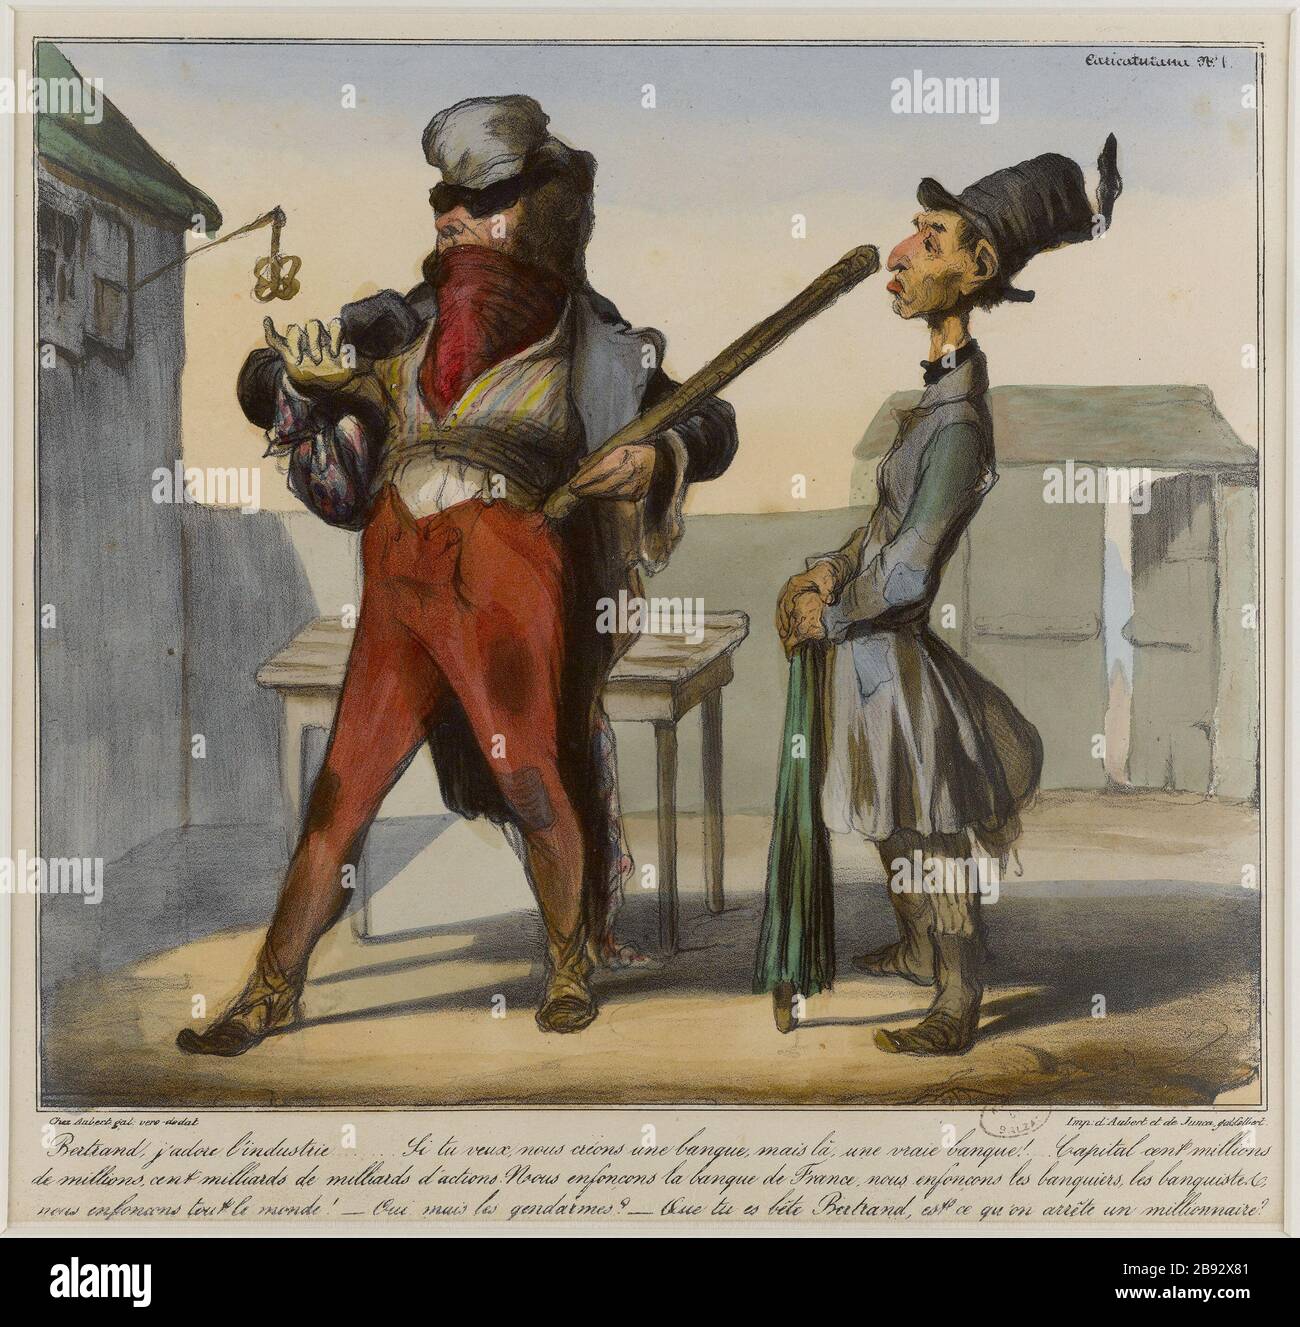 BERTRAND, ME ENCANTA LA INDUSTRIA .. Honoré Daumier (1808-1879). 'Bertrand, j'adore l'industrie...'. Lithographie coloriée et gommée. 1836-1838. París, Maison de Balzac. Foto de stock